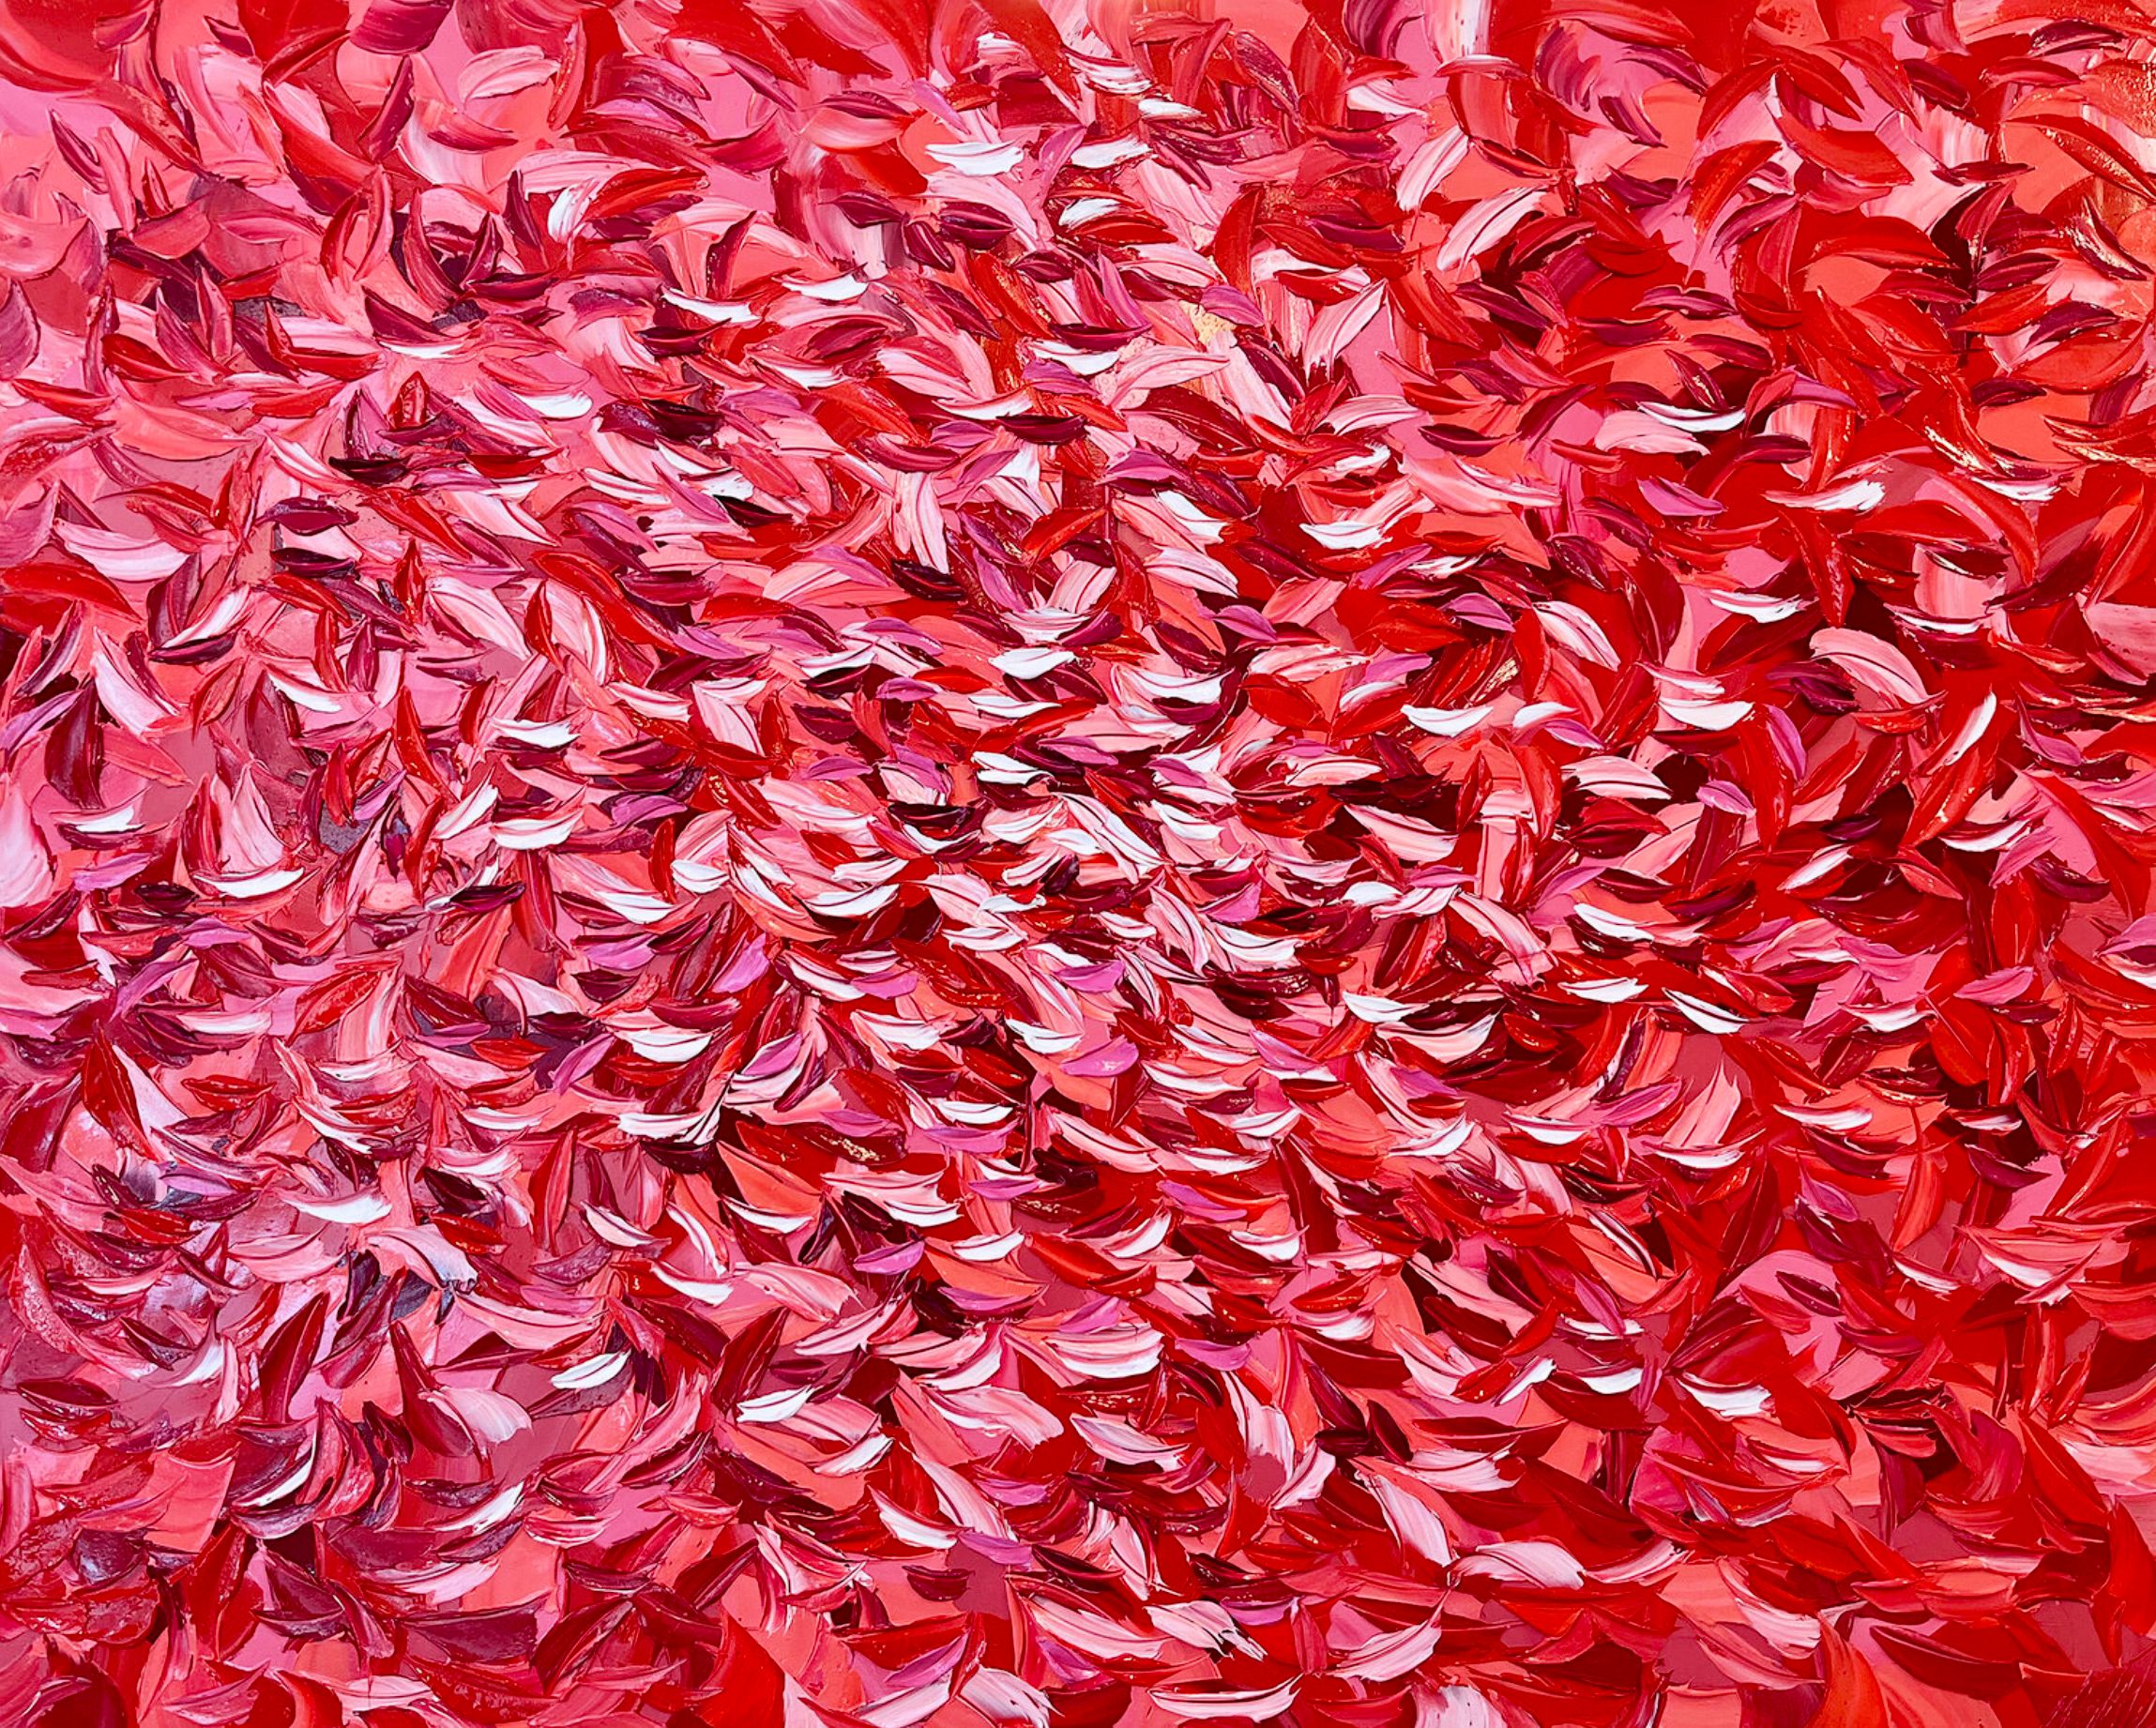 Oliver Messas "L'envolée" Peinture abstraite feuilles rouges